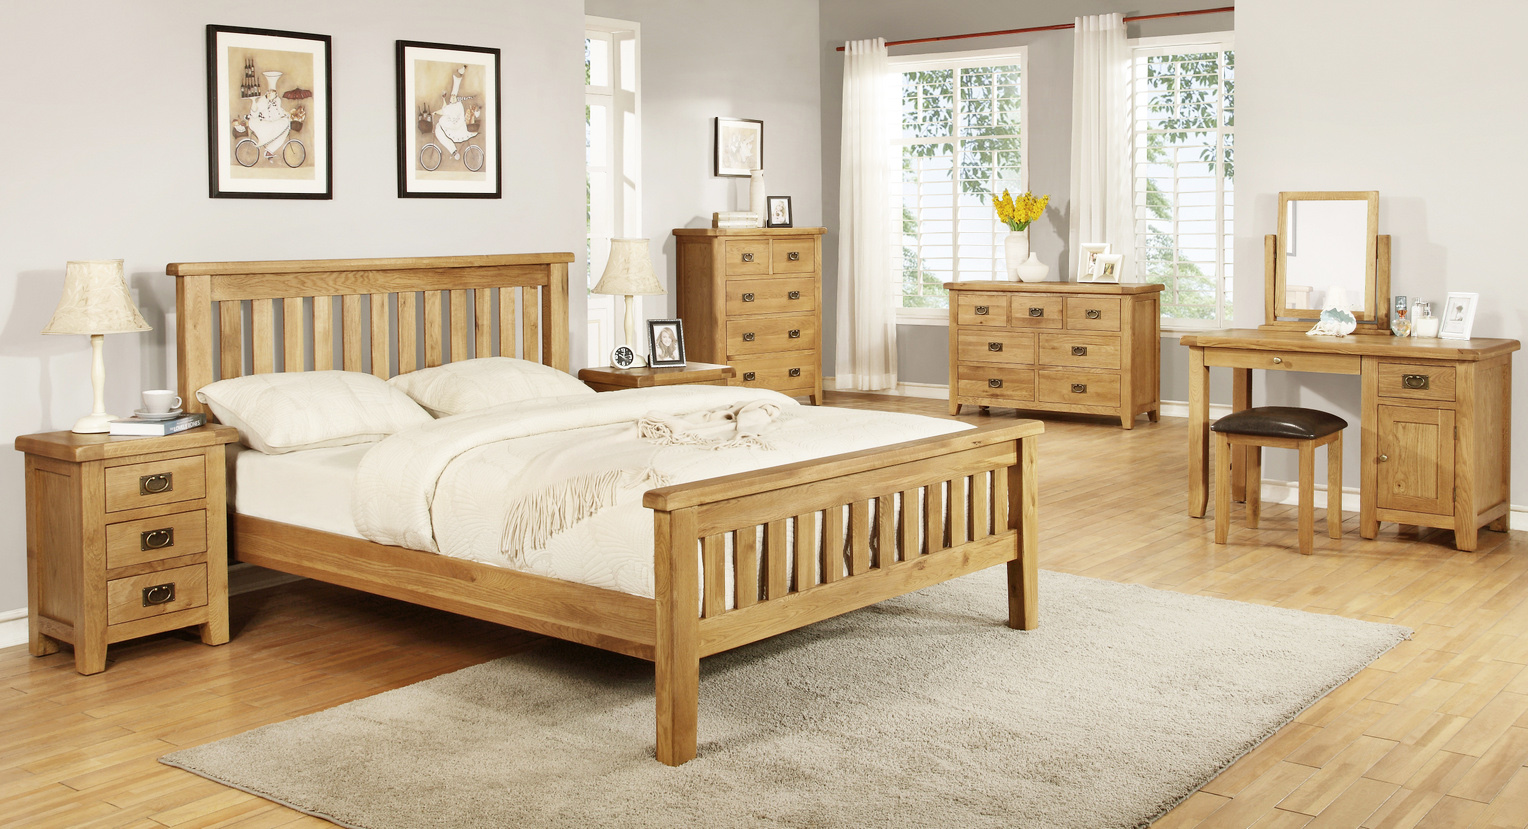 house of oak bedroom furniture